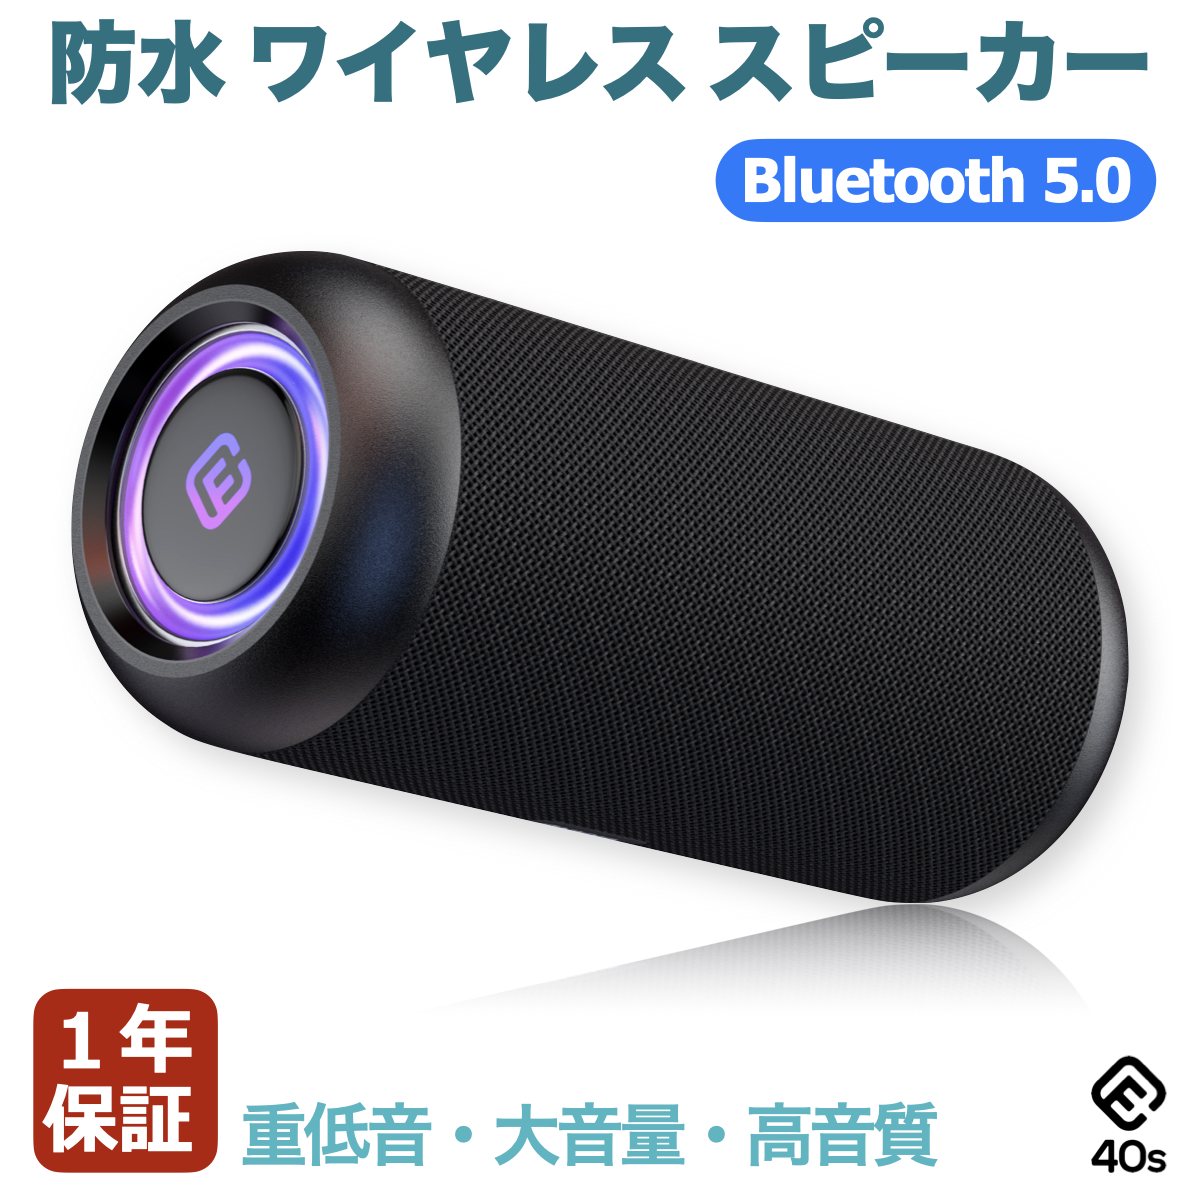 楽天市場 Anker Soundcore 3 Bluetooth スピーカー イコライザー設定 チタニウムドライバー Bassupテクノロジー Partycast機能 Ipx7 防水規格 24時間連続再生 Usb C接続 アンカー ダイレクト楽天市場店